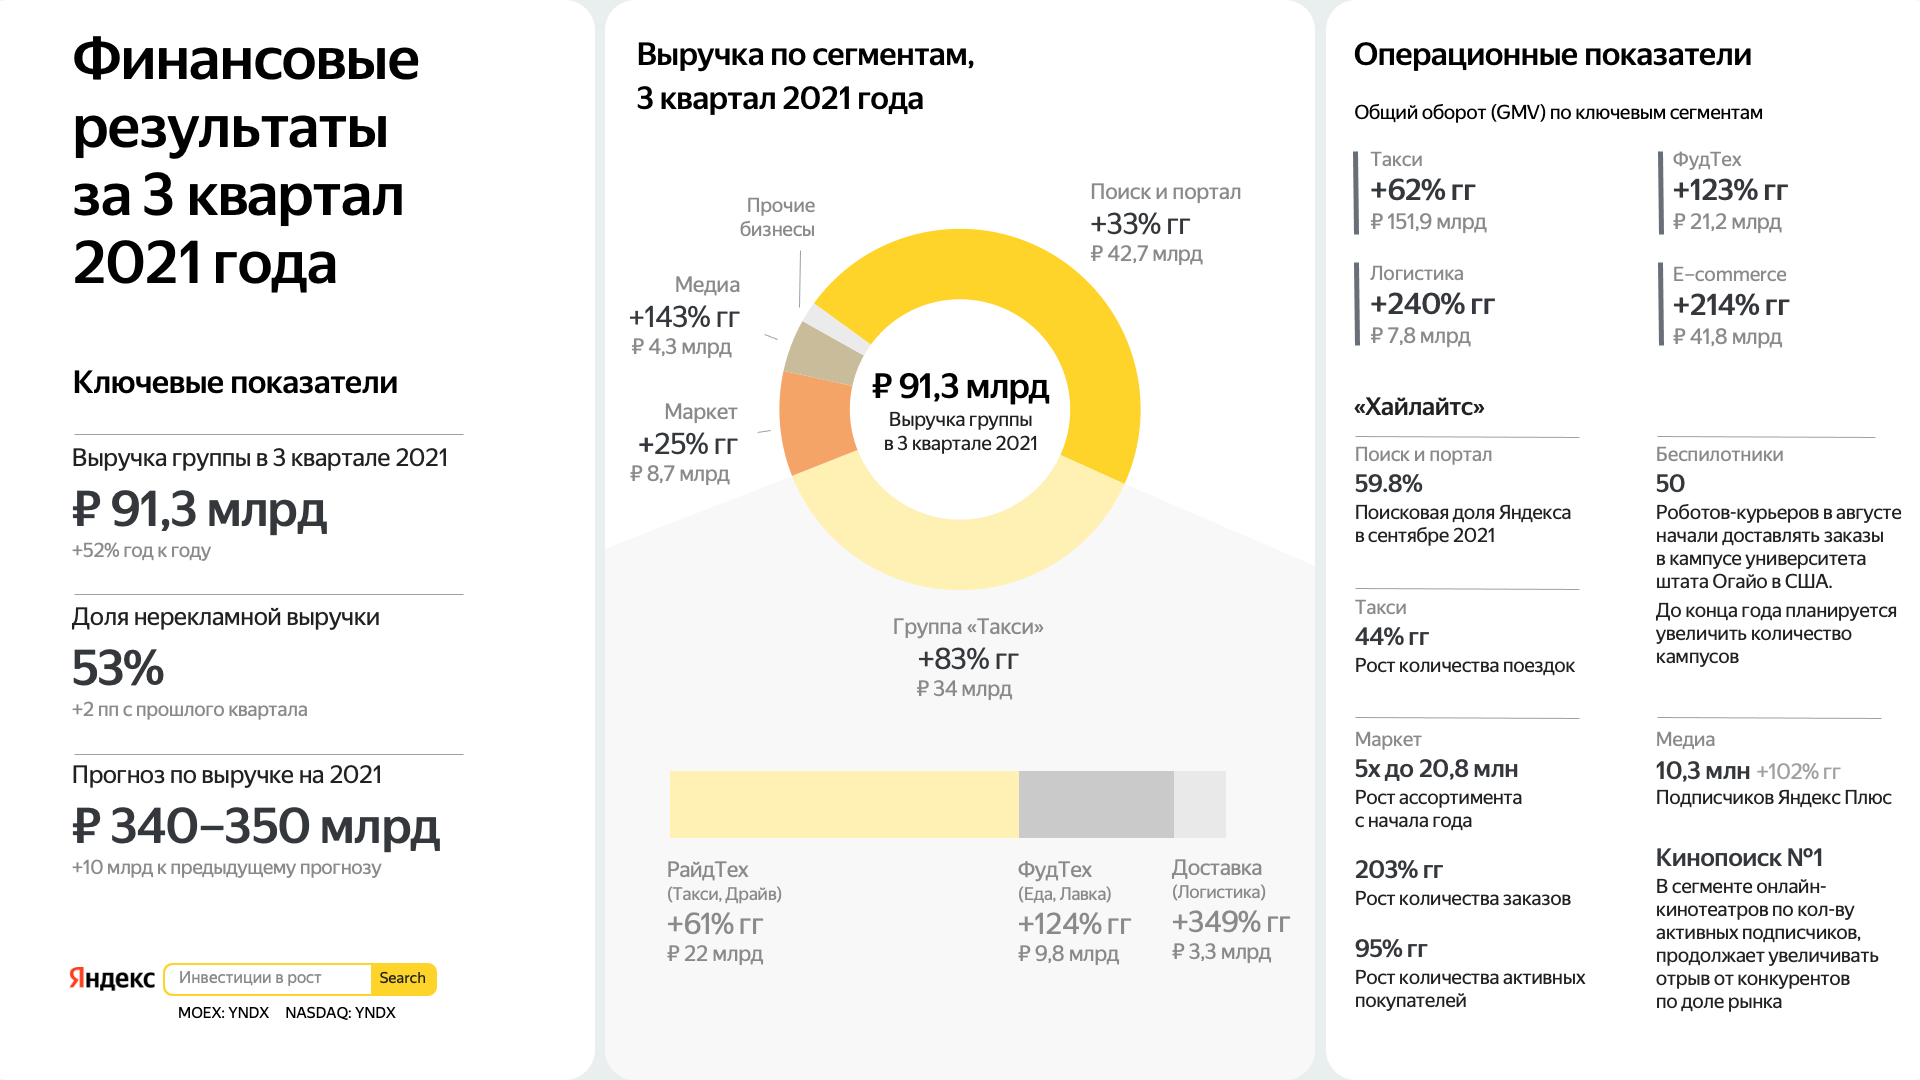 Инфографика финансовых результатов Яндекса за 3 квартал 2021 года